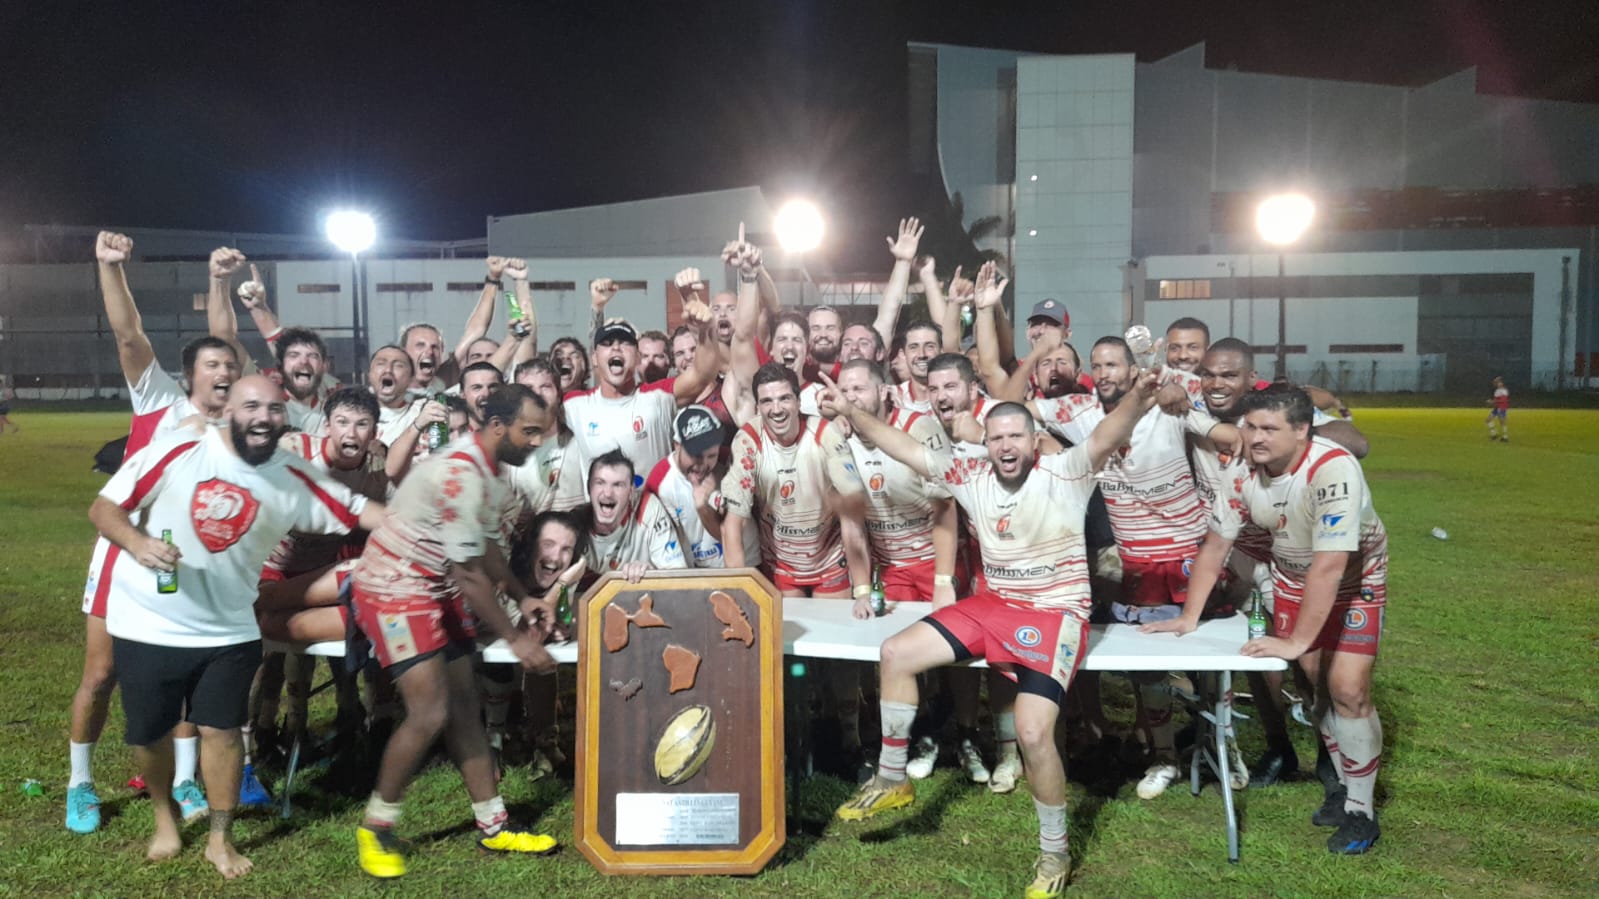     Le Good Luck du Gosier remporte le Tournoi Antilles-Guyane de rugby

